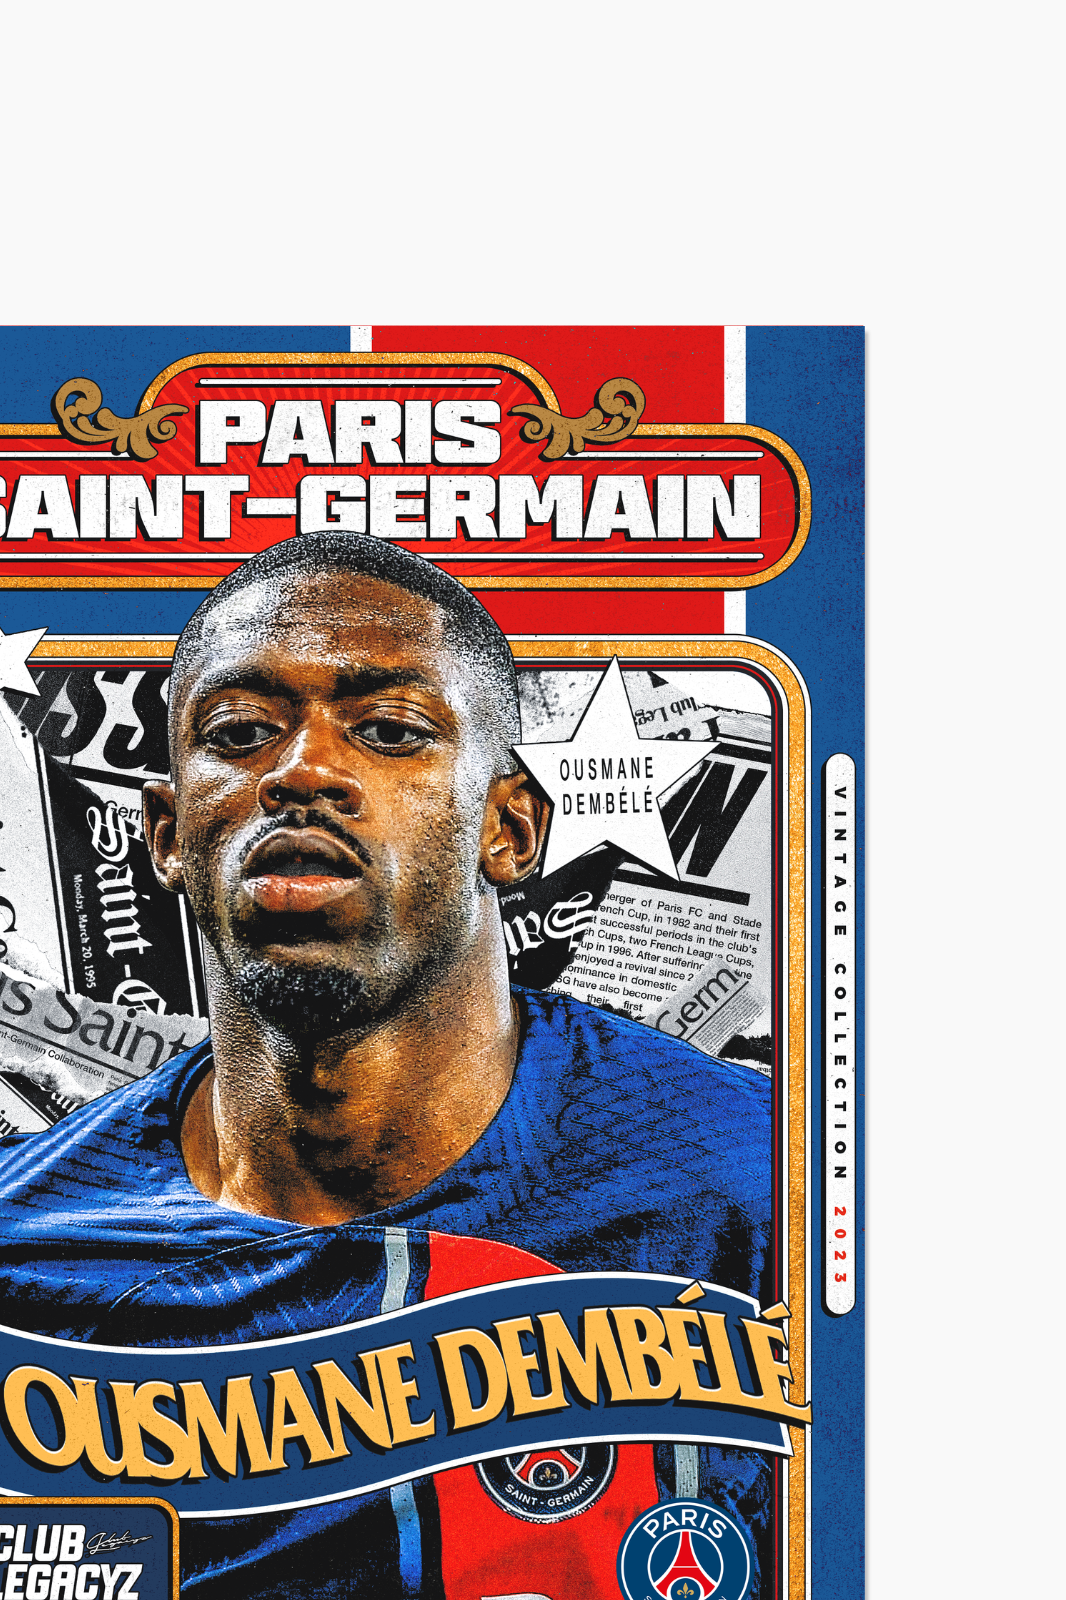 Paris Saint-Germain - Ousmane Dembélé Retro Poster limited to 100